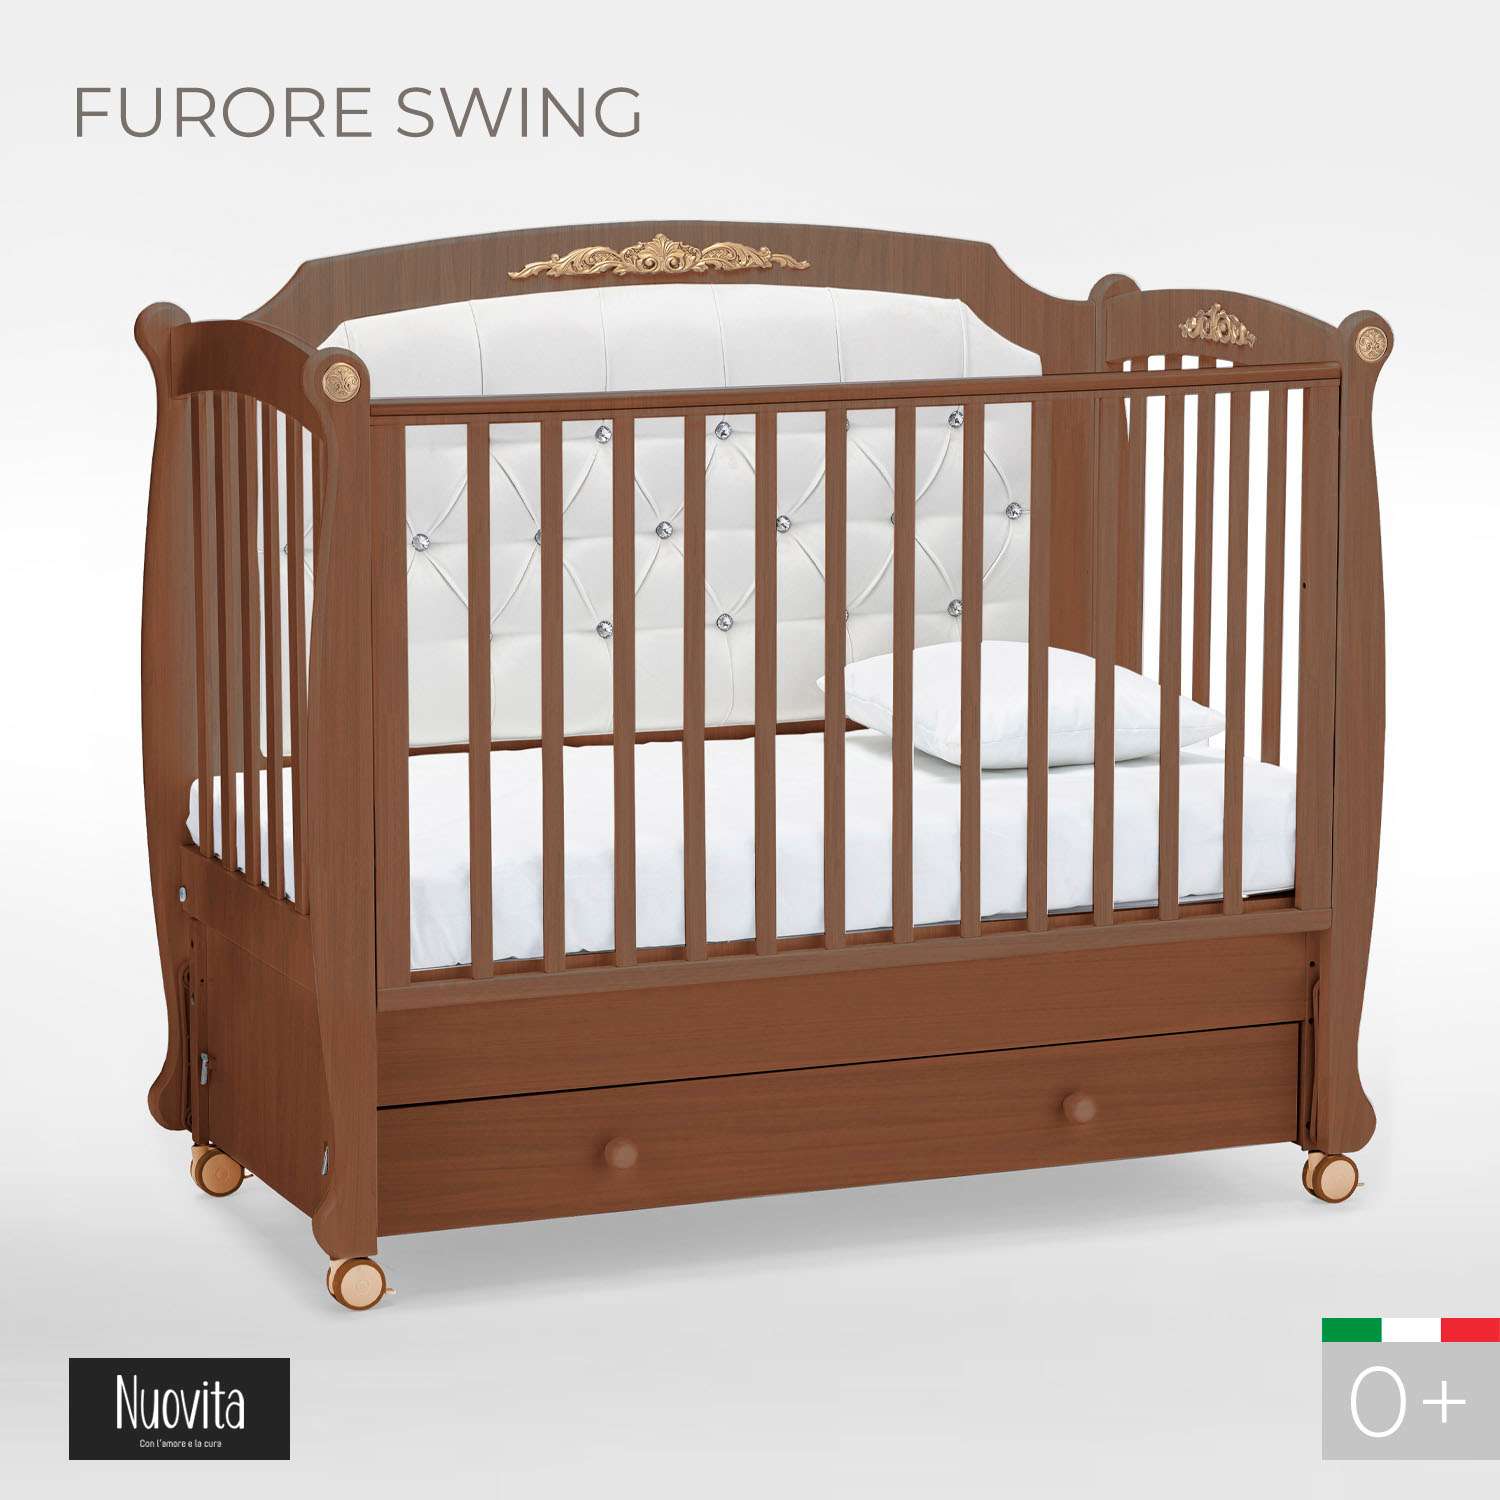 Детская кроватка Nuovita Furore Swing прямоугольная, продольный маятник (темный орех) - фото 2